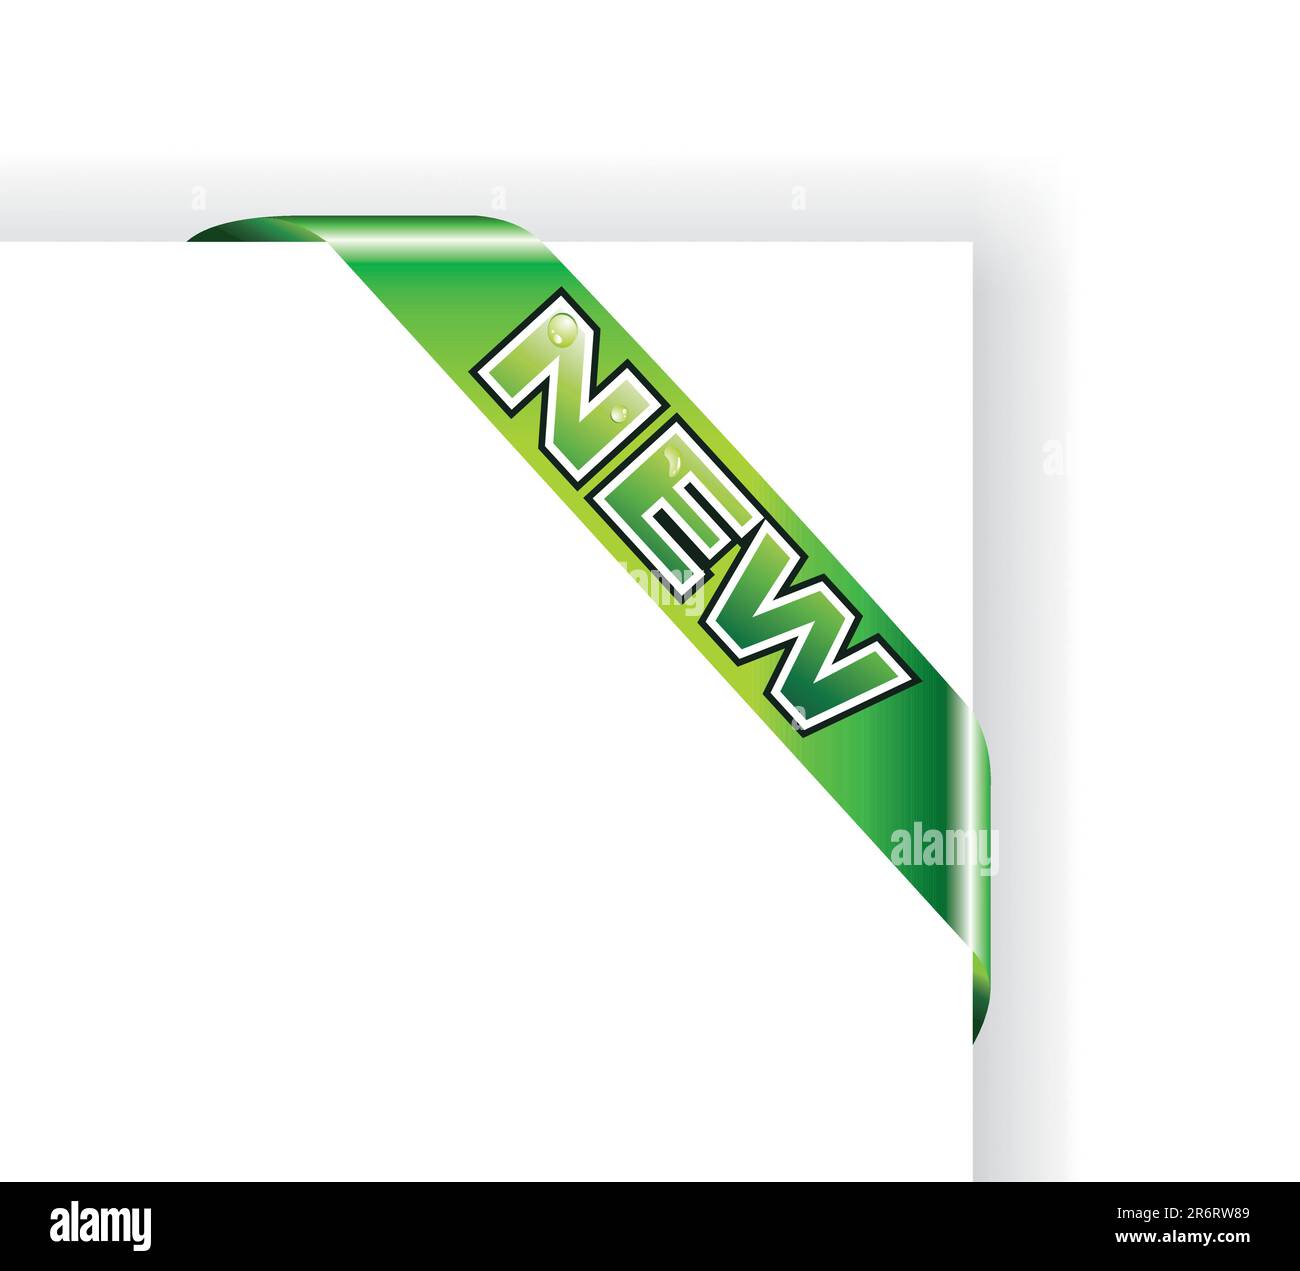 Etiqueta de anuncio con el texto colorido 'Nuevo' Ilustración del Vector